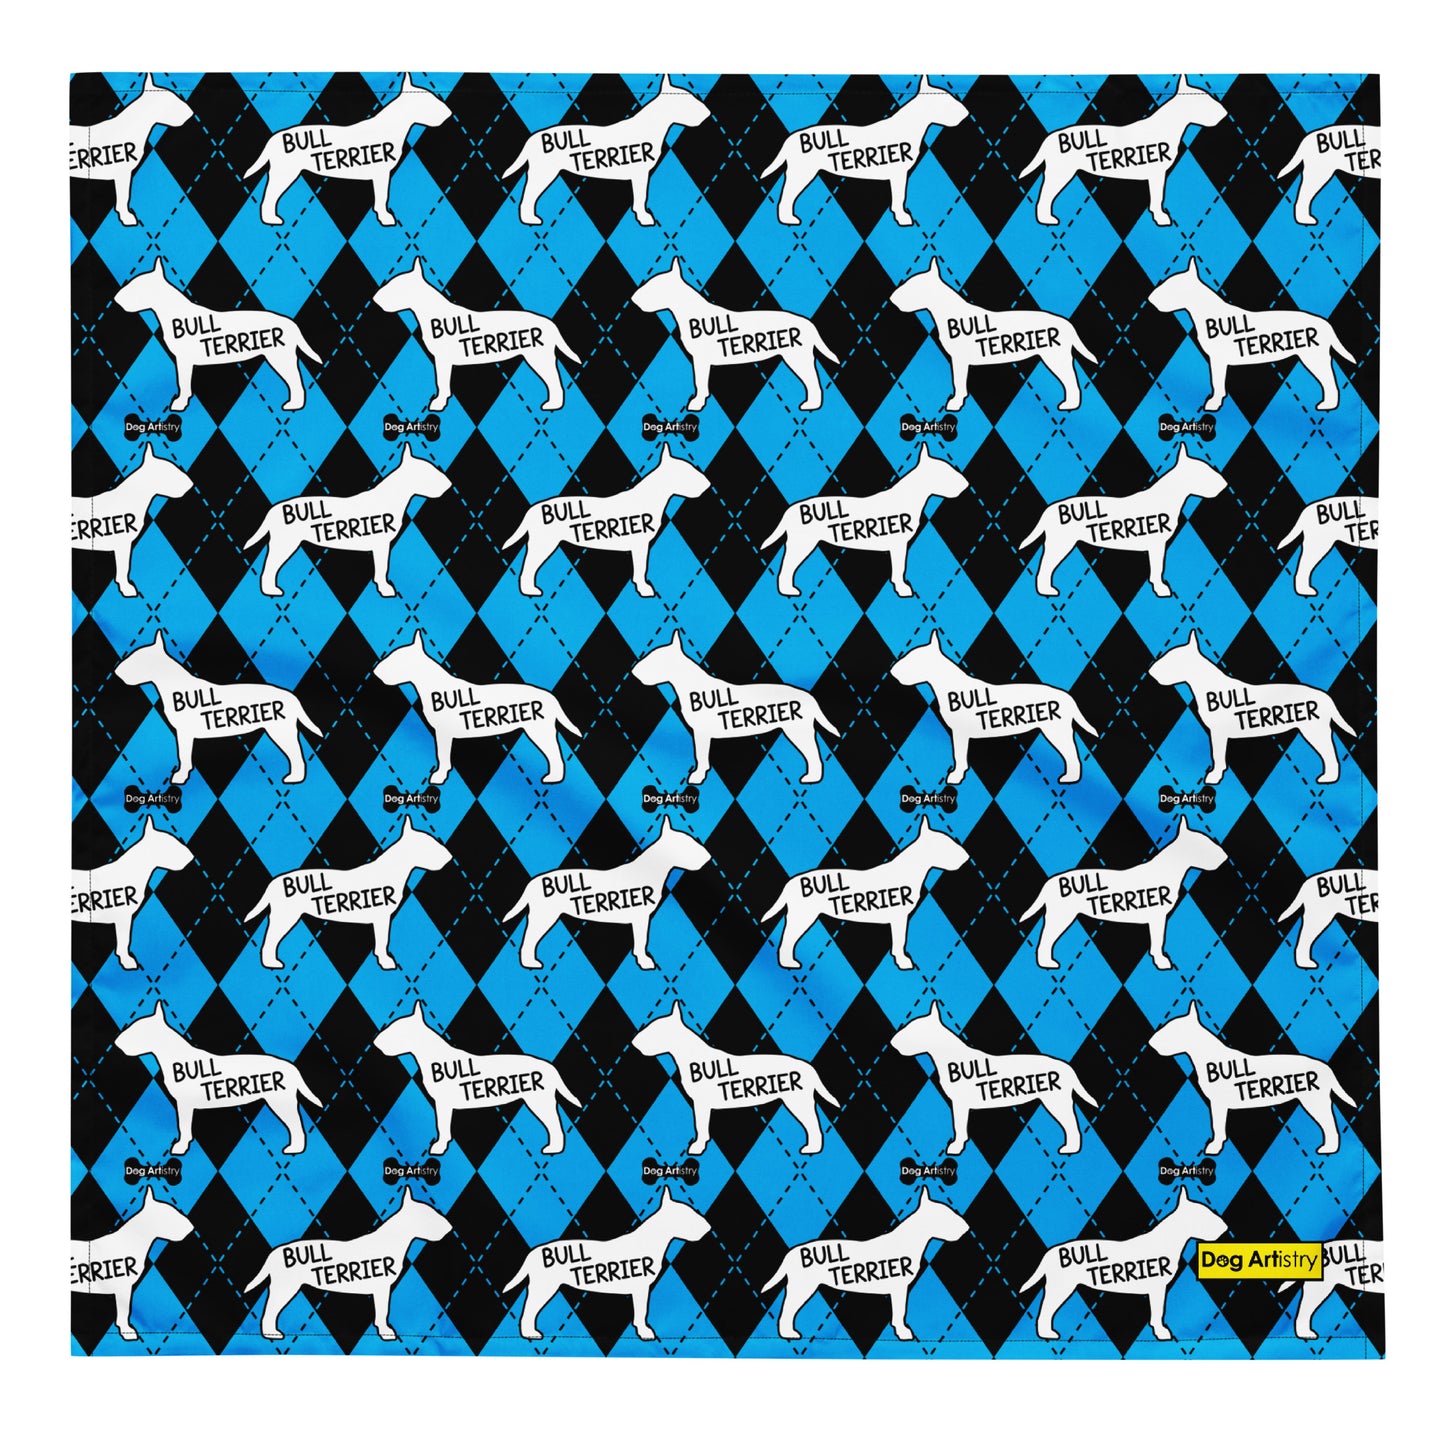 Bull Terrier Argyle Blue and Black All-over print bandana